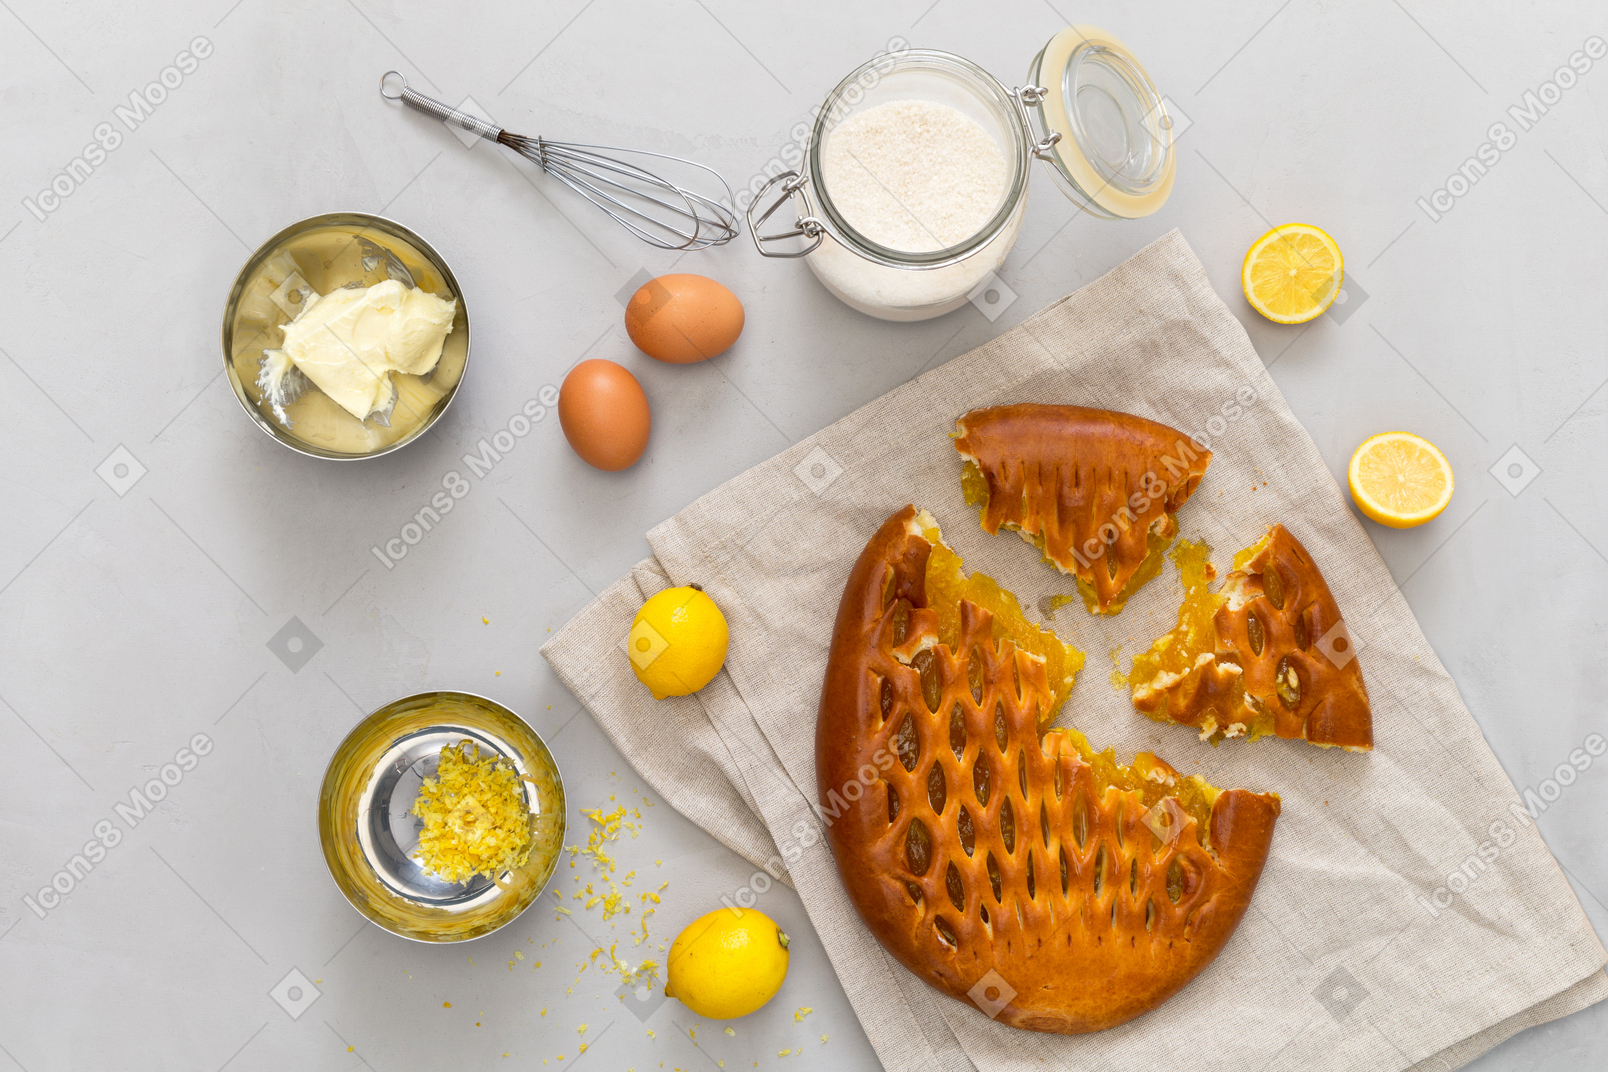 レモン、レモンの皮、砂糖、バター、卵、レモンのパイの瓶